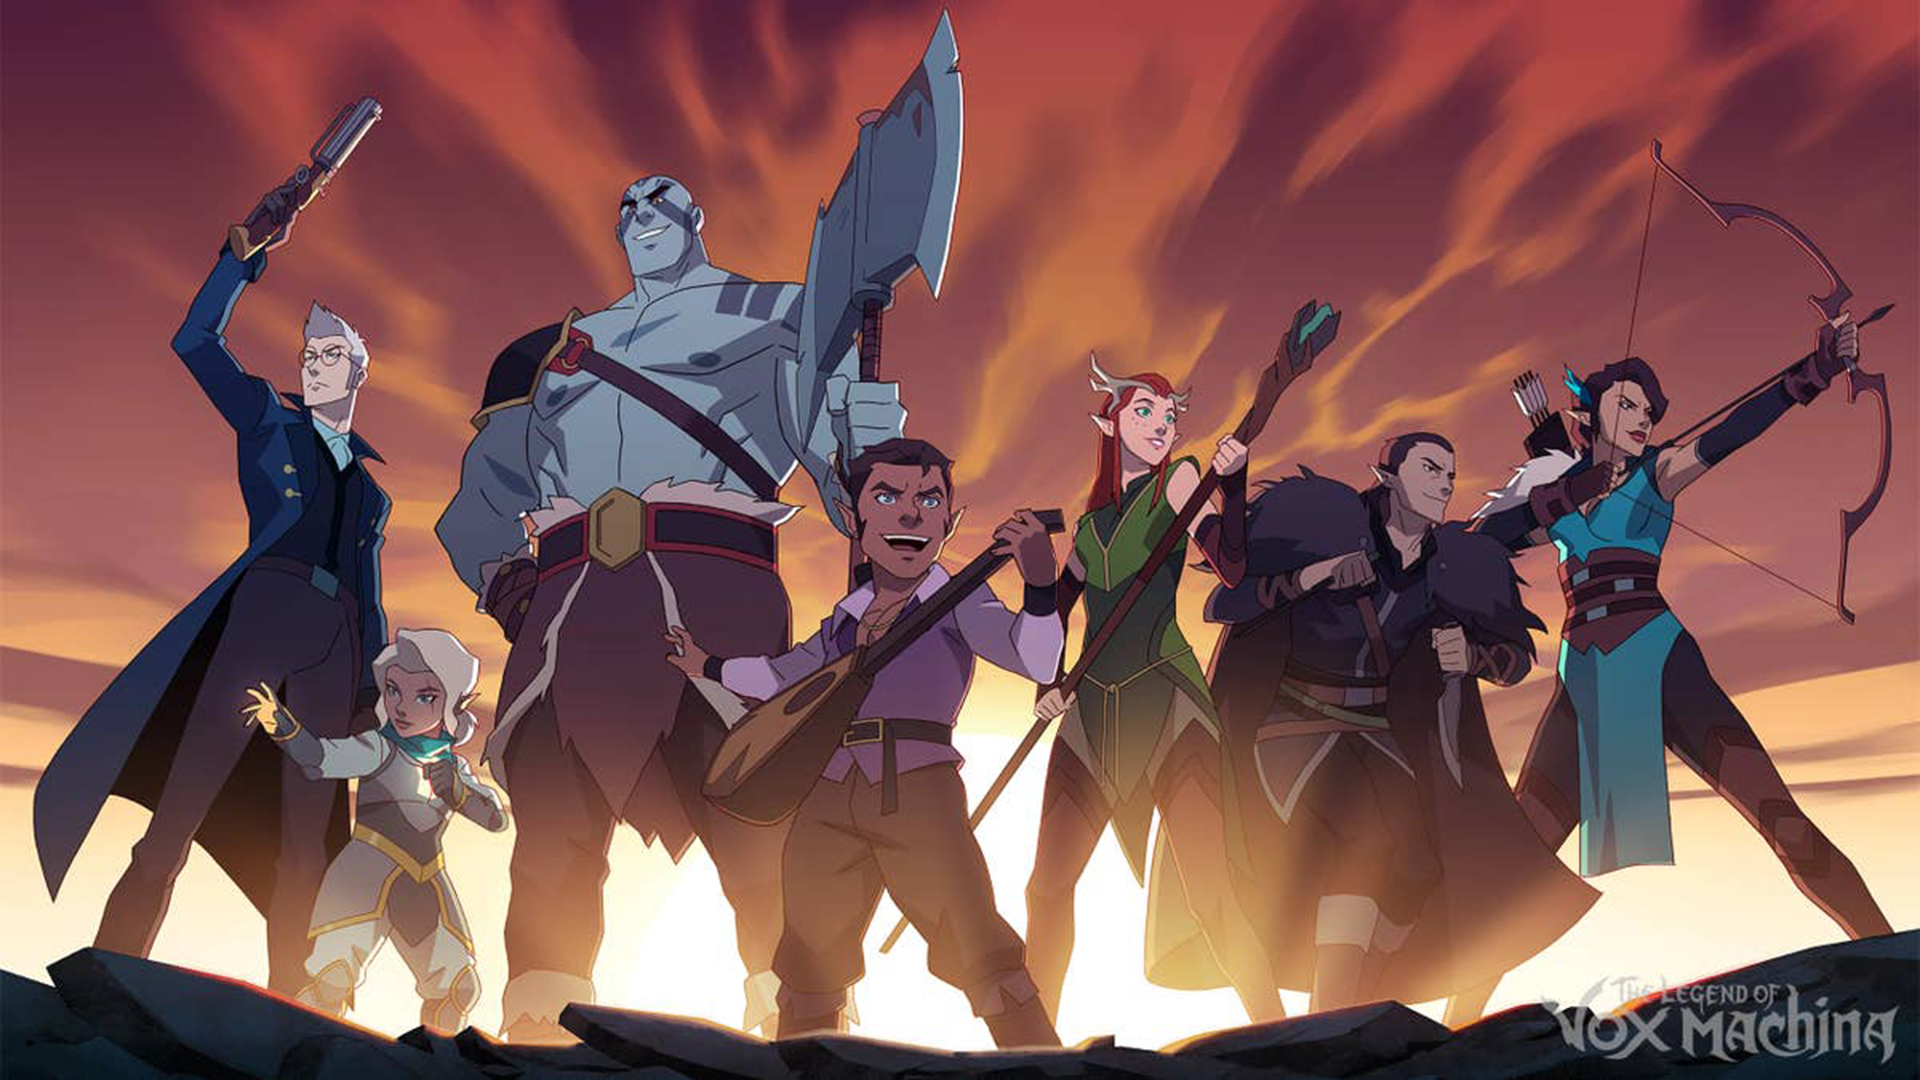 Imagem oficial da terceira temporada de The Legend of Vox Machina, exibindo da esquerda para direita: Percy, Pike, Grog, Scanlan, Keyleth, Vax e Vex, em poses heróicas.